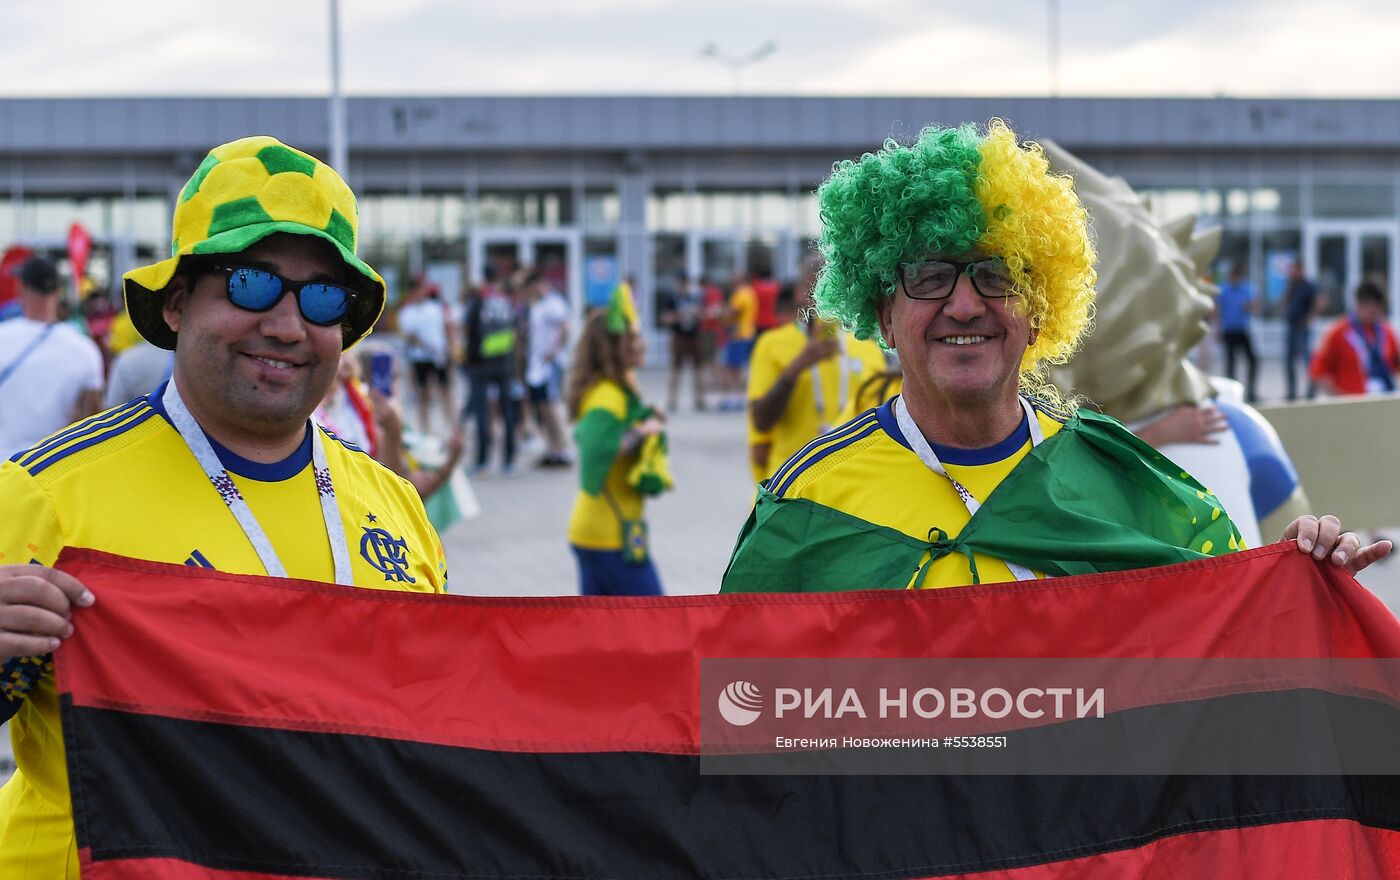 Болельщики перед матчем ЧМ-2018 по футболу между сборными Бразилии и Швейцарии